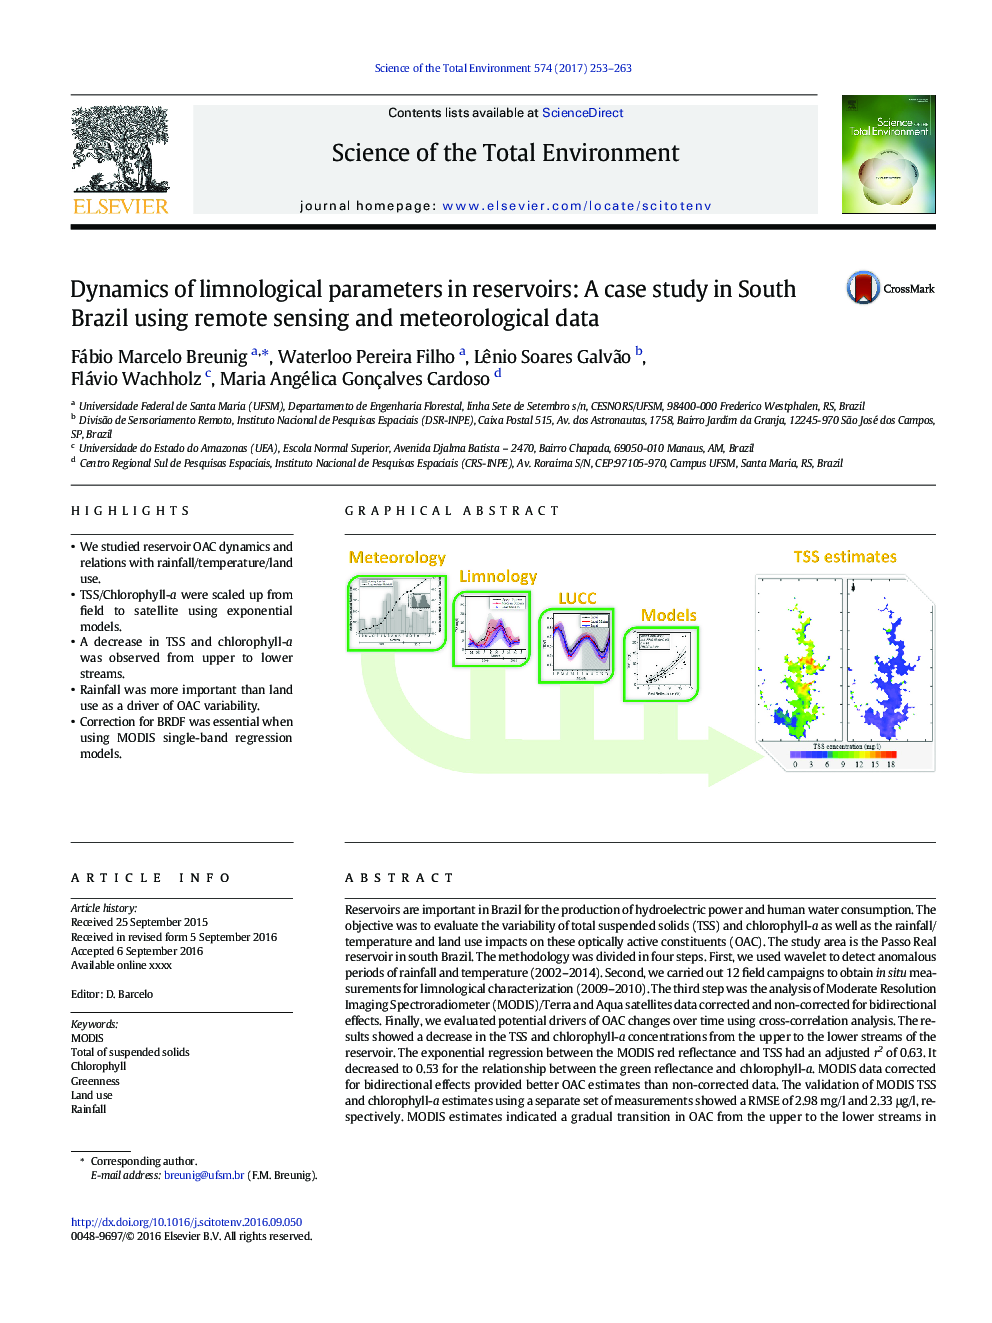 دینامیک پارامترهای لننولوژیکی در مخازن: مطالعه موردی در برزیل جنوبی با استفاده از داده های سنجش از دور و داده های هواشناسی